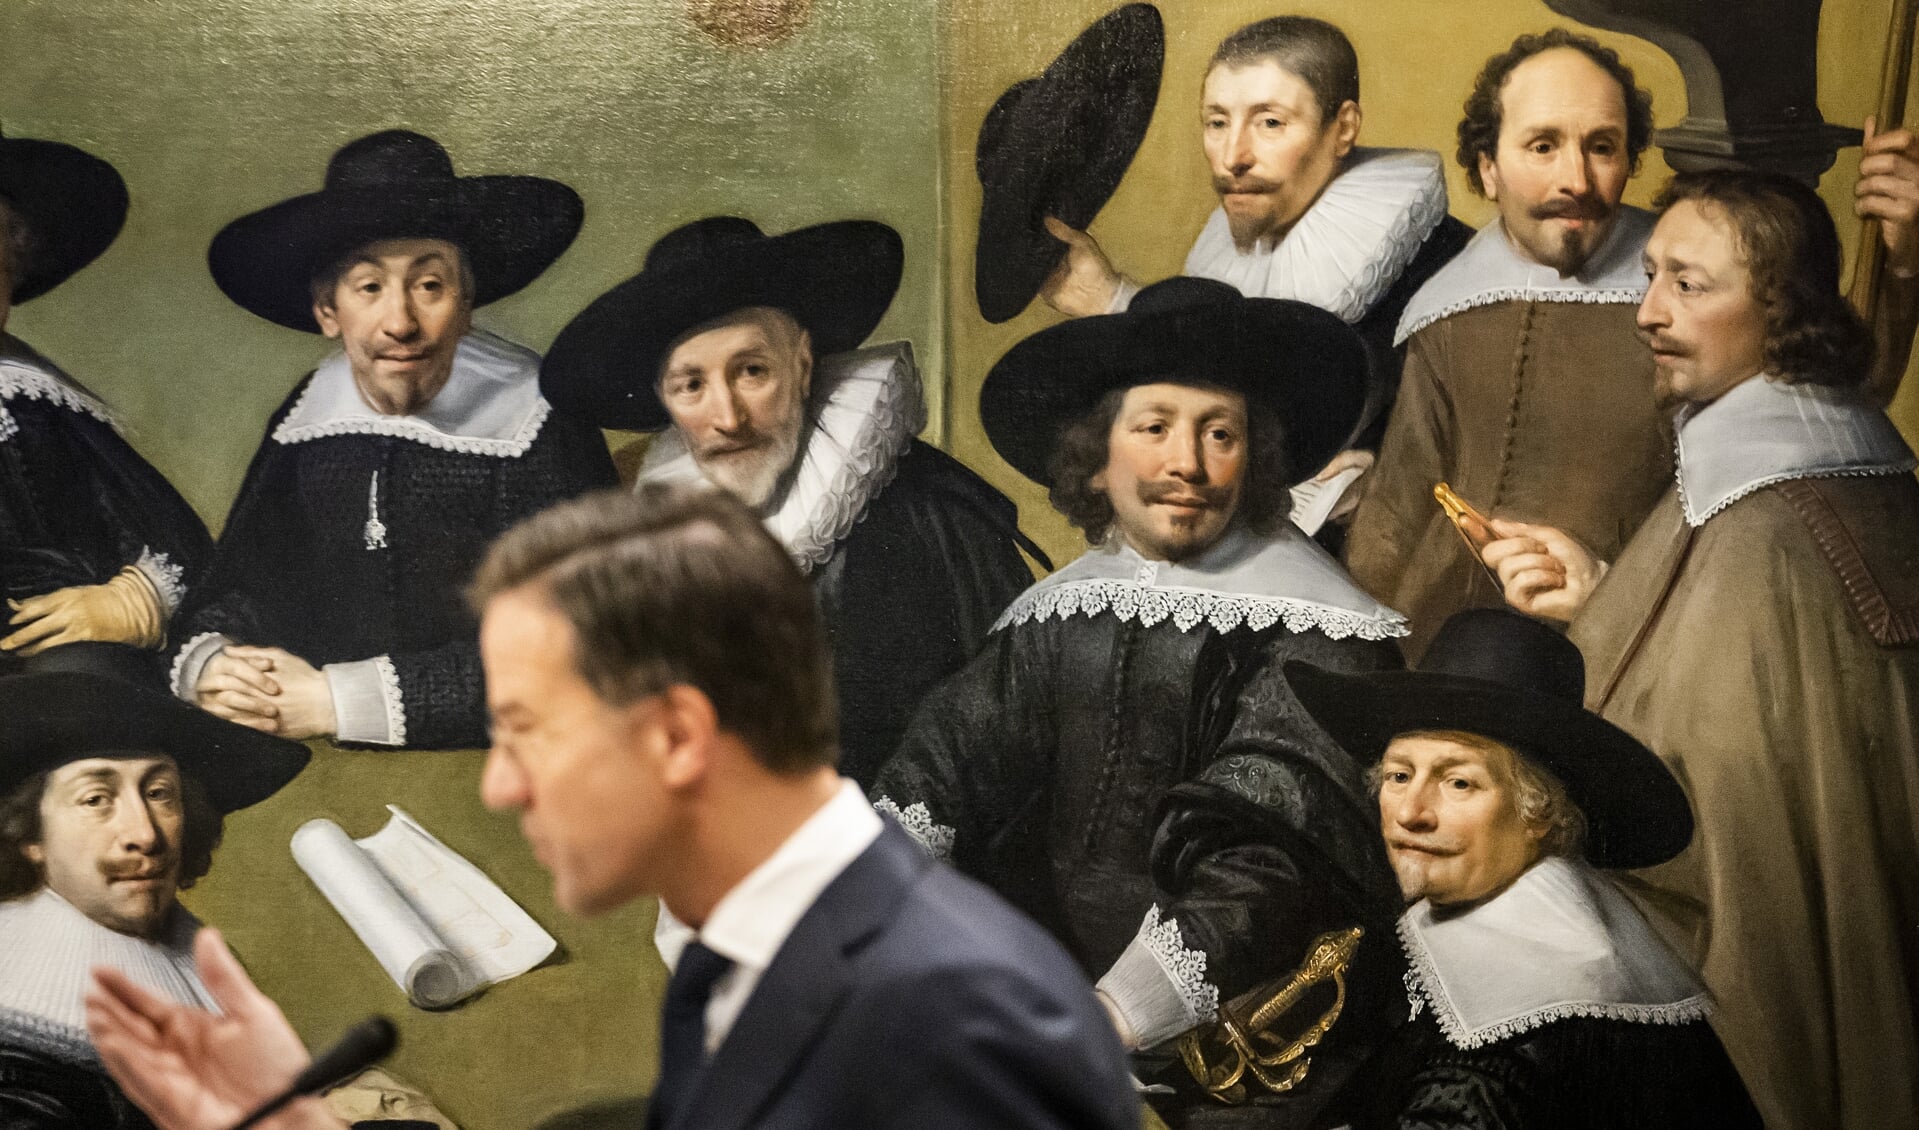 Demissionair premier Mark Rutte tijdens de opening van de tentoonstelling Macht - 800 jaar Binnenhof in het Haags Historisch Museum.